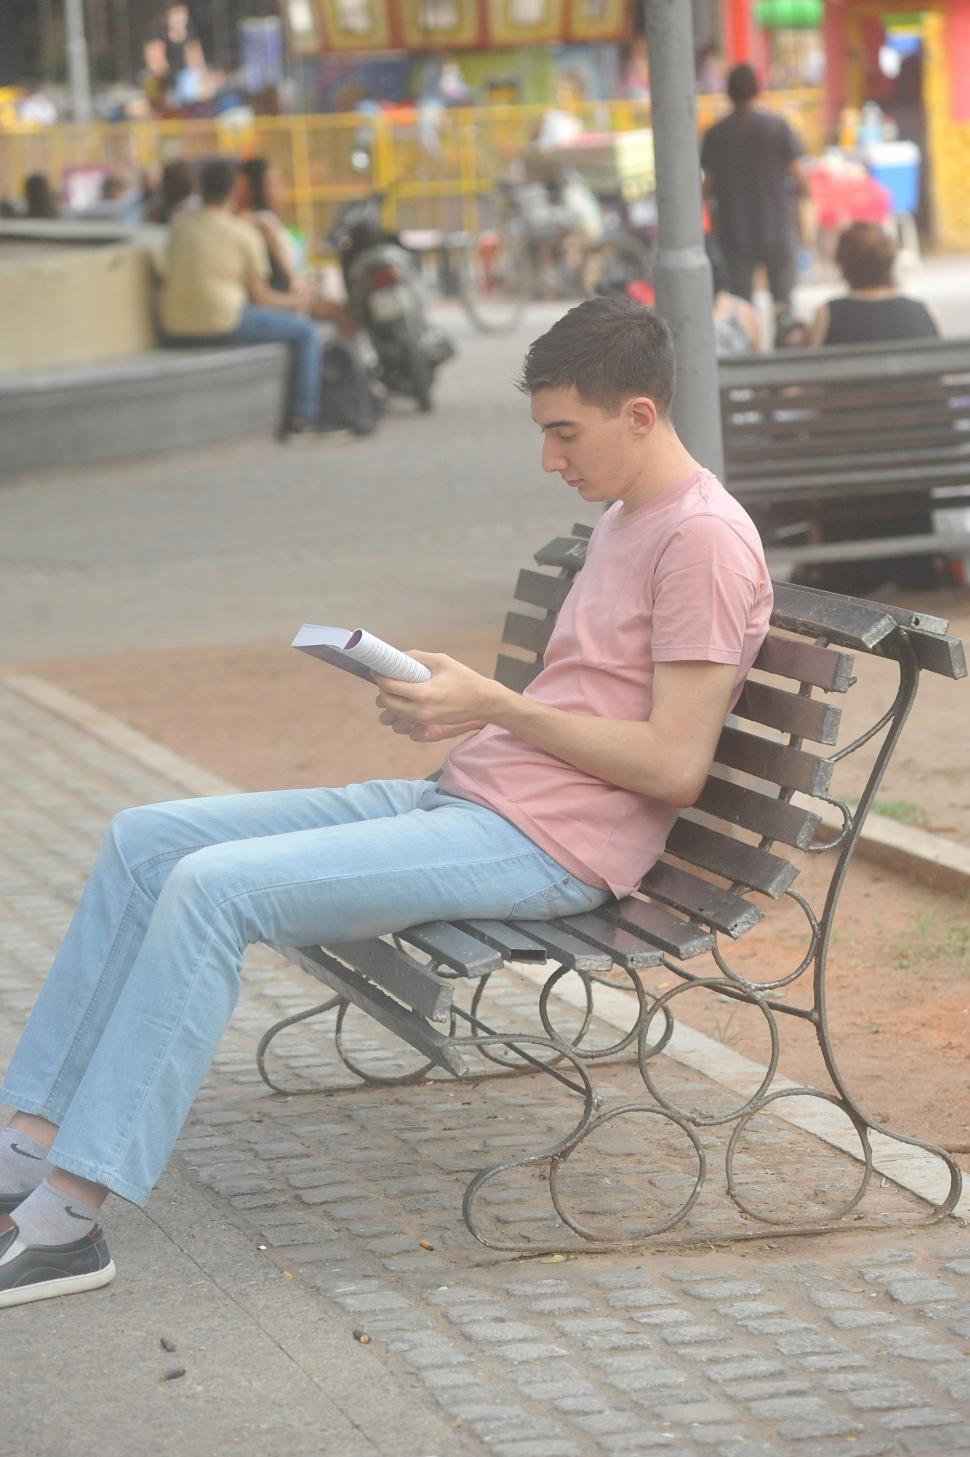 UN LECTOR. Un joven ocupó un banco de la Plaza Urquiza para enfrascarse en un libro, quizá la manera más inteligente de atravesar los rigores del calor.